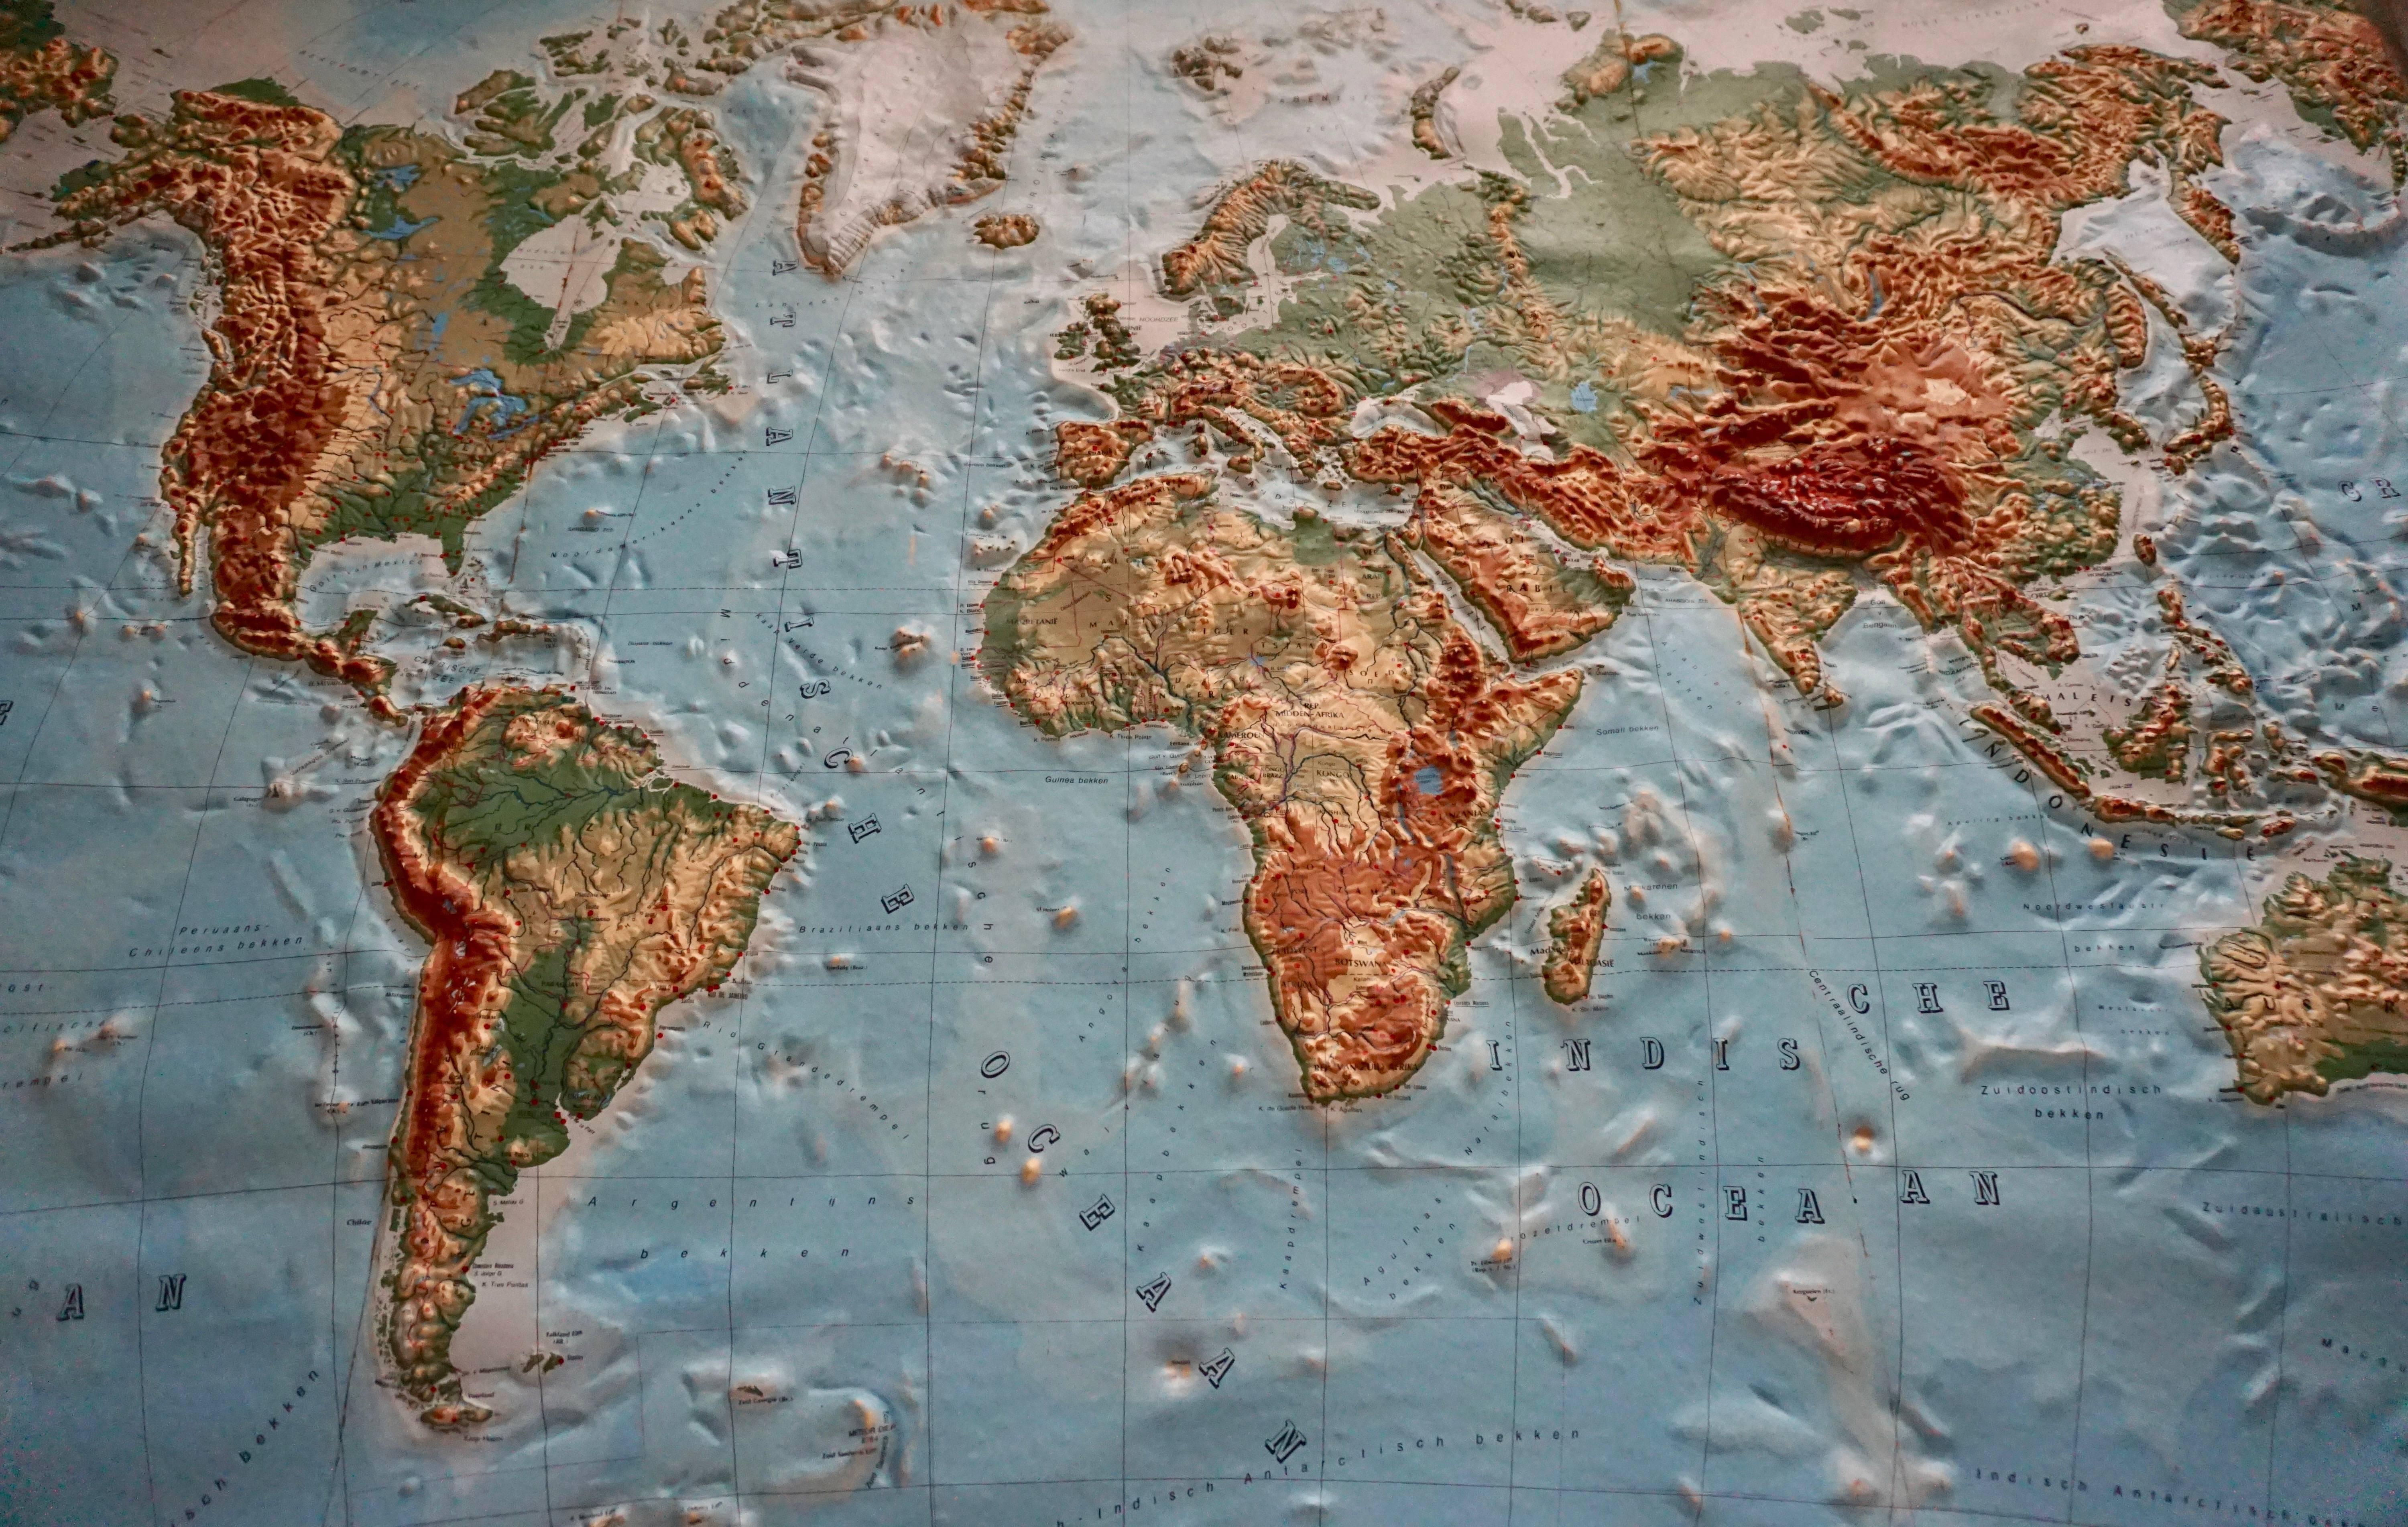 Grande carte mondiale en relief.
Mesures : Largeur 232 cm.
Hauteur 158 cm.